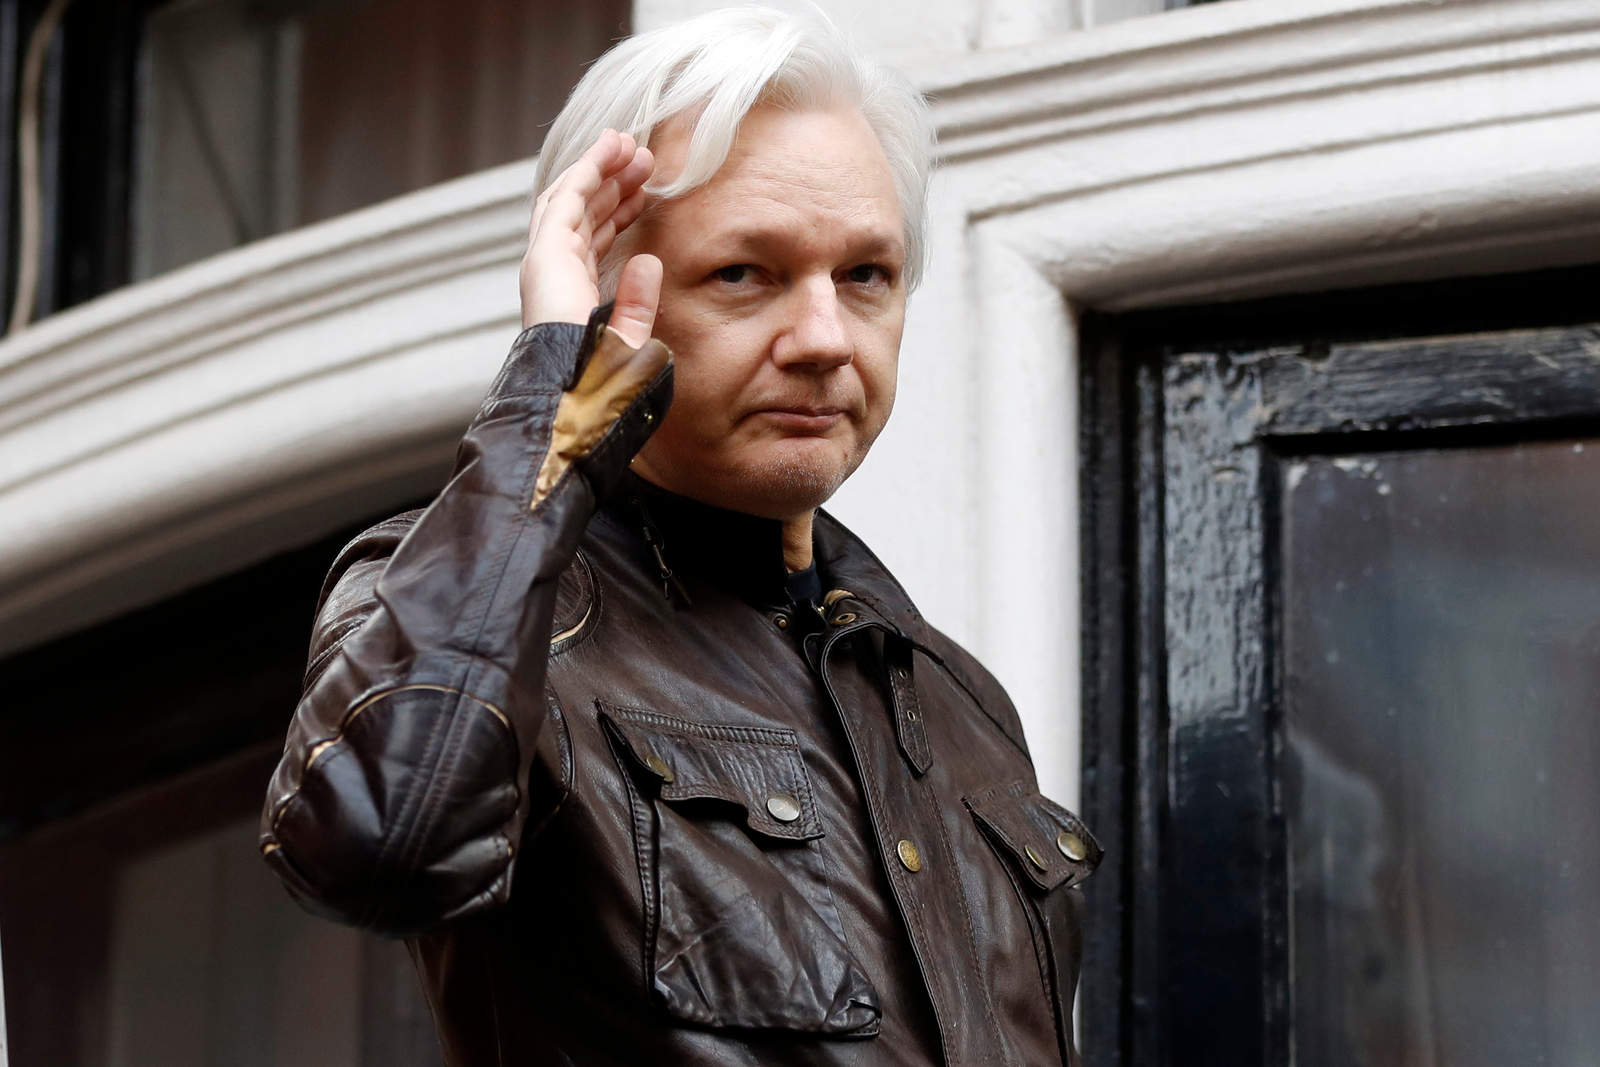 Imputación es precedente negativo para la democracia: Abogada de Assange. Noticias en tiempo real